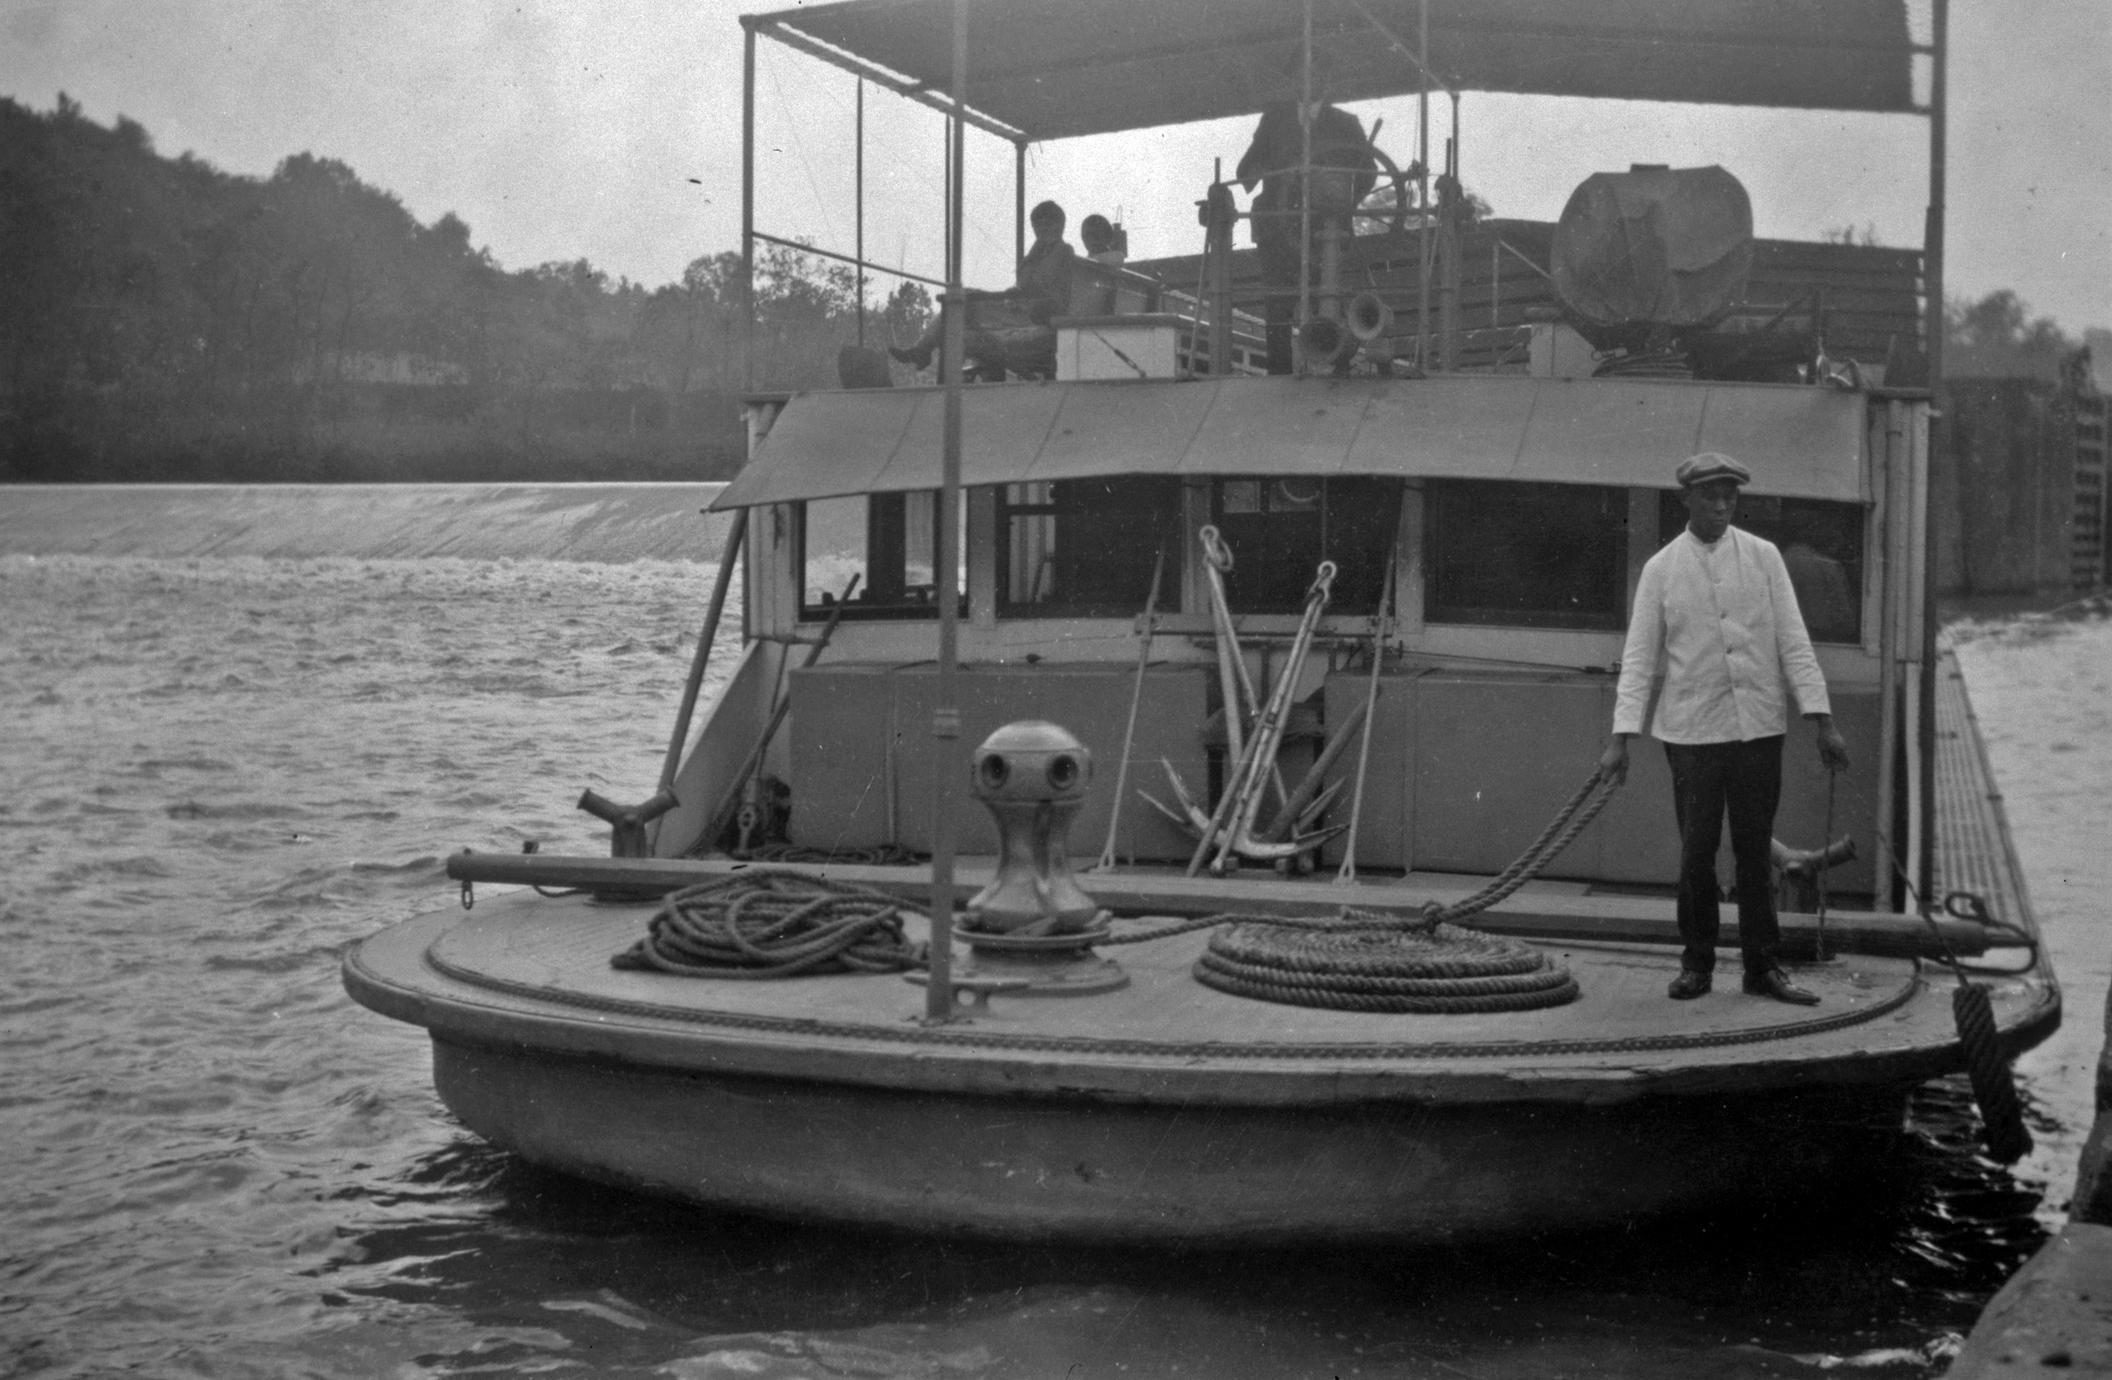 Polly (Private pleasure boat, 1912-circa 1927)